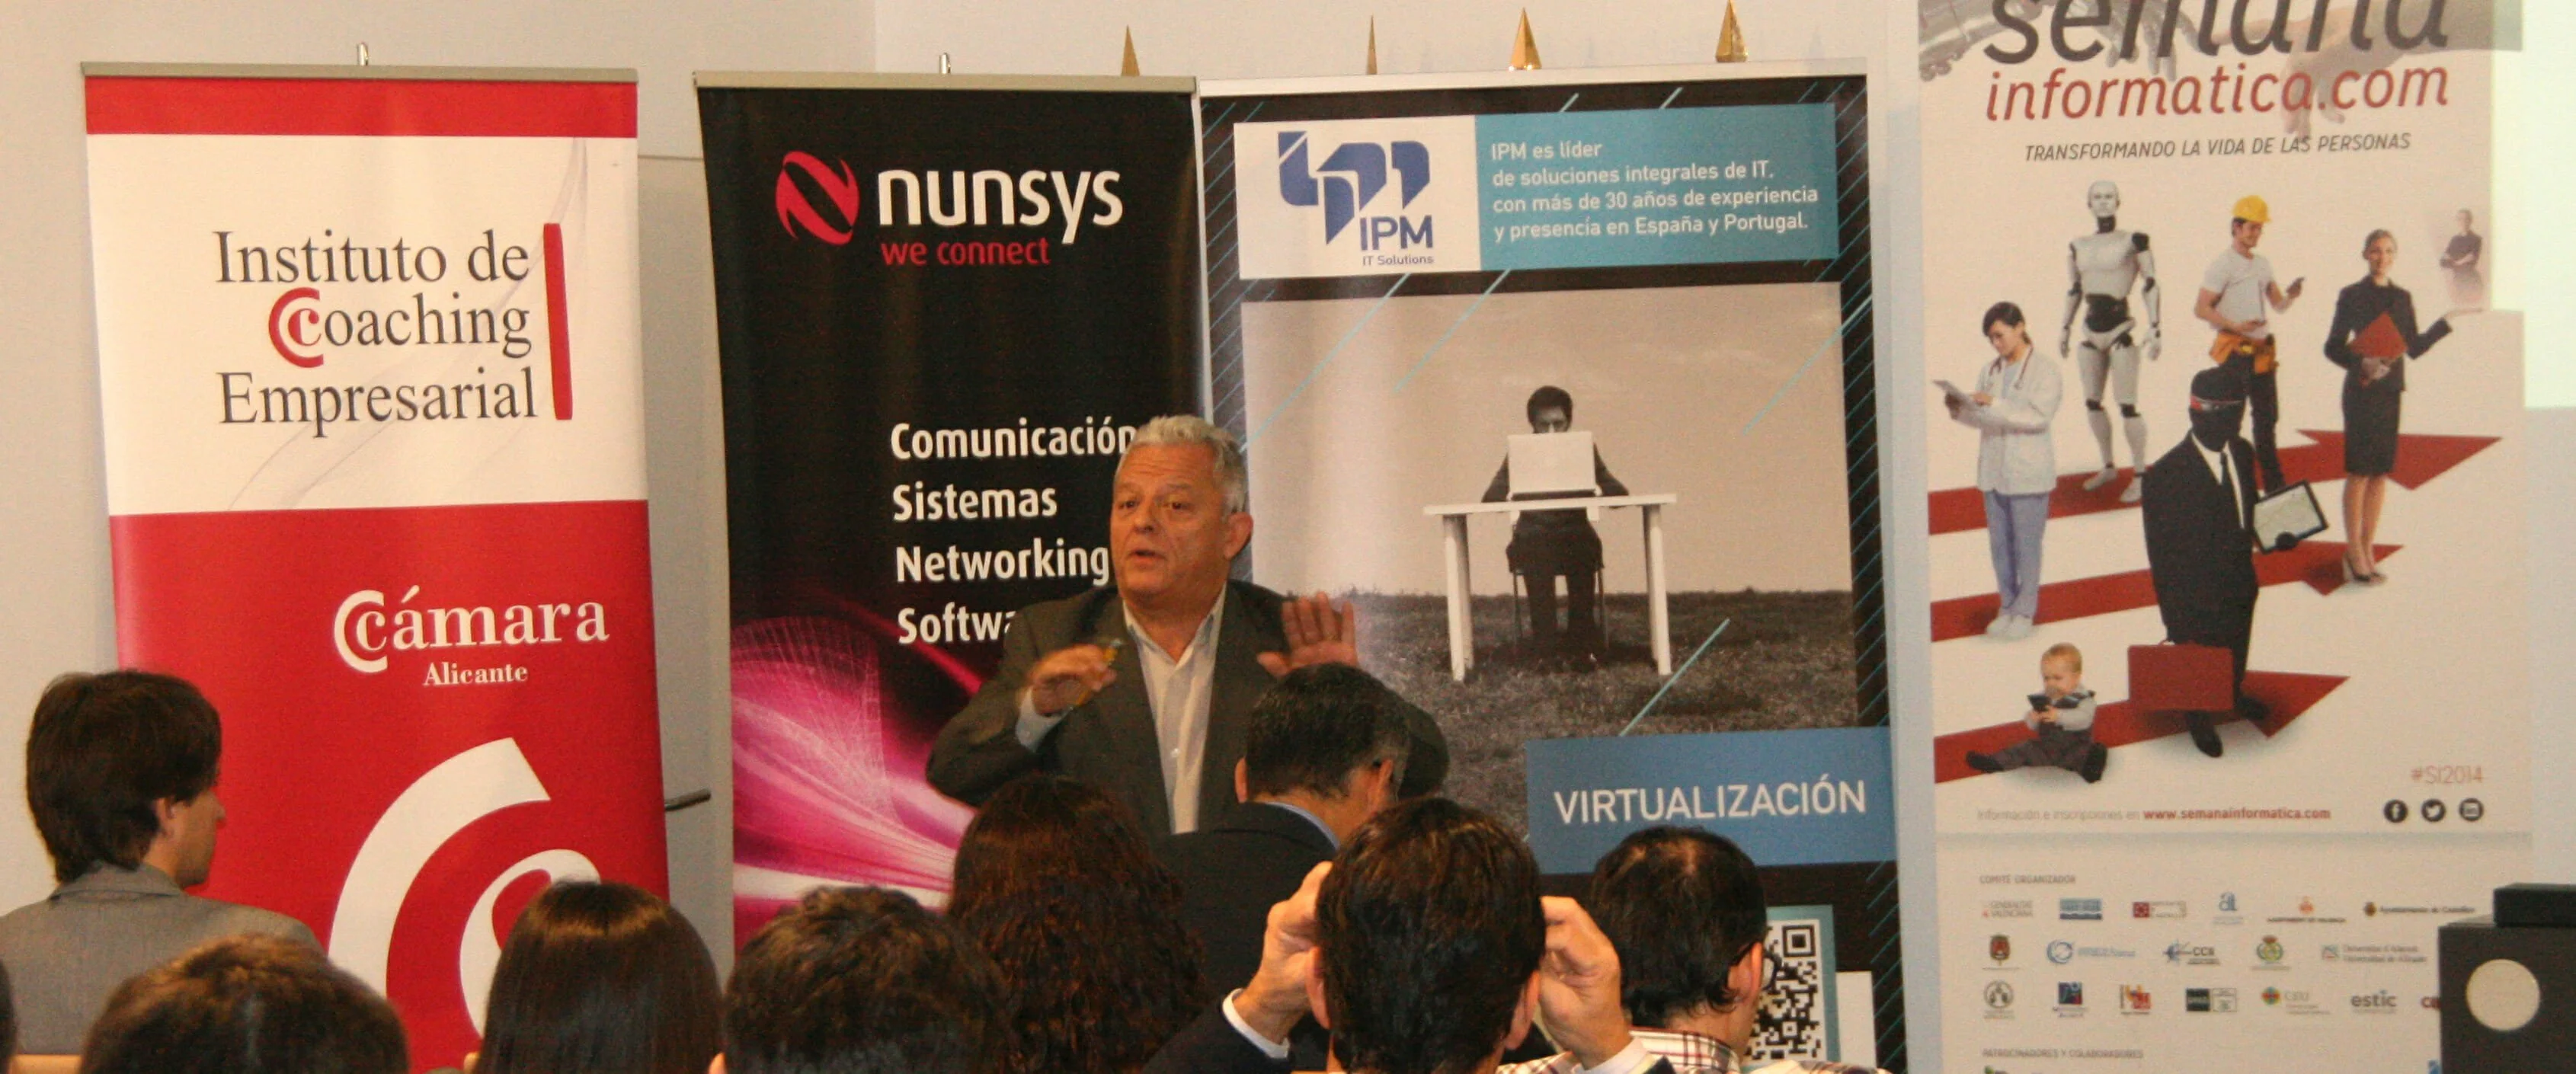 Josep Verdura en semana informática 2014